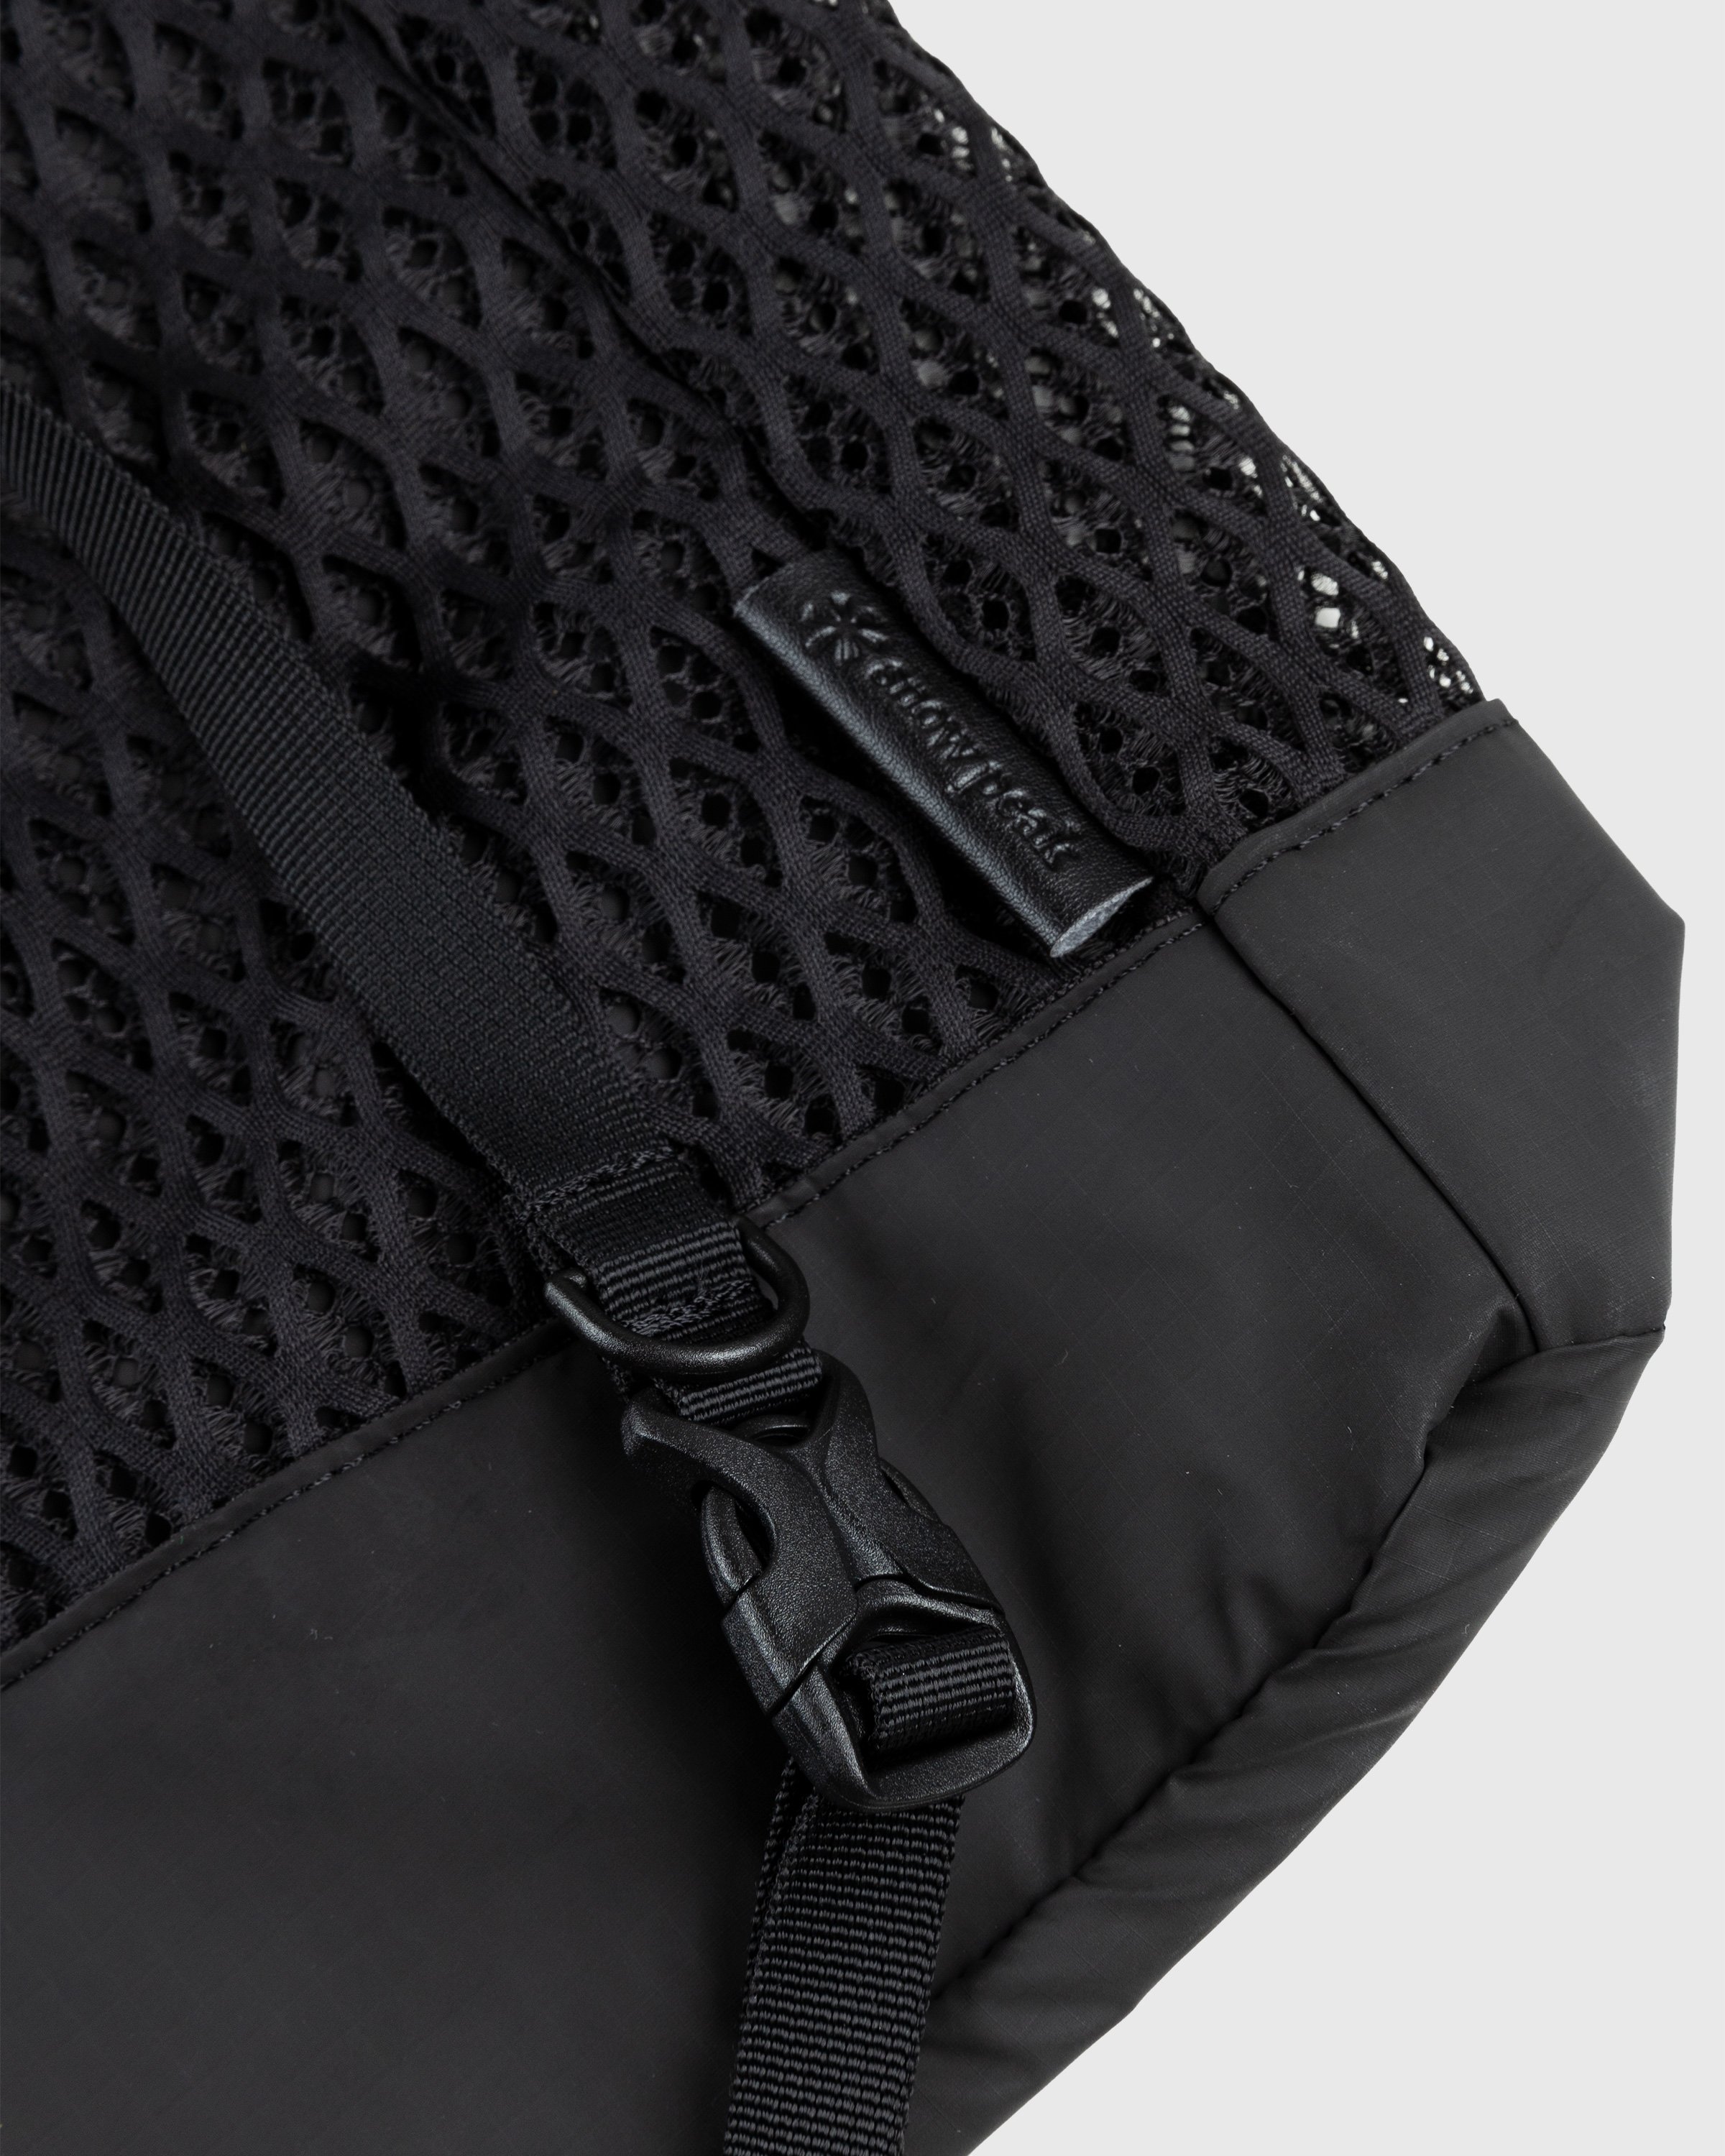 Snow Peak - Double Face Mesh Shoulder Bag Black - Accessories - Black - Image 4